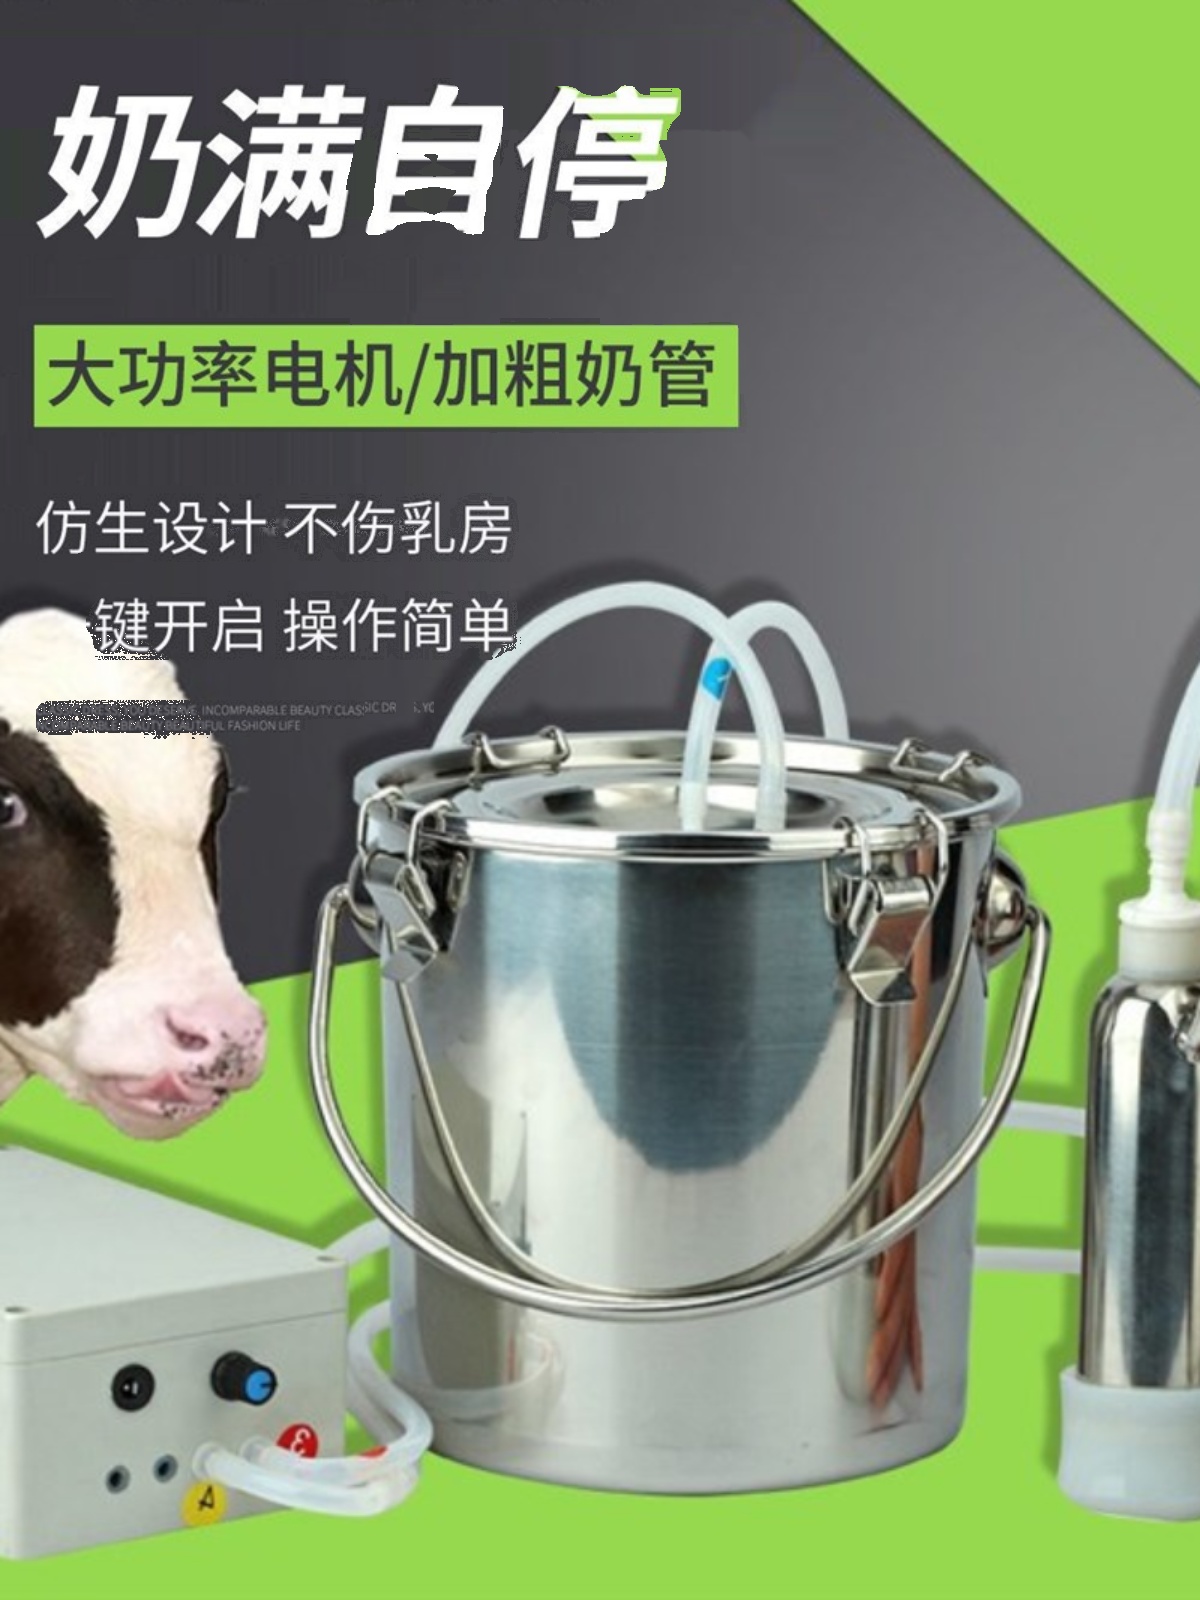 新牛用电动挤奶器羊用挤奶机家用便携式吸奶器羊奶器牛挤奶机牛促